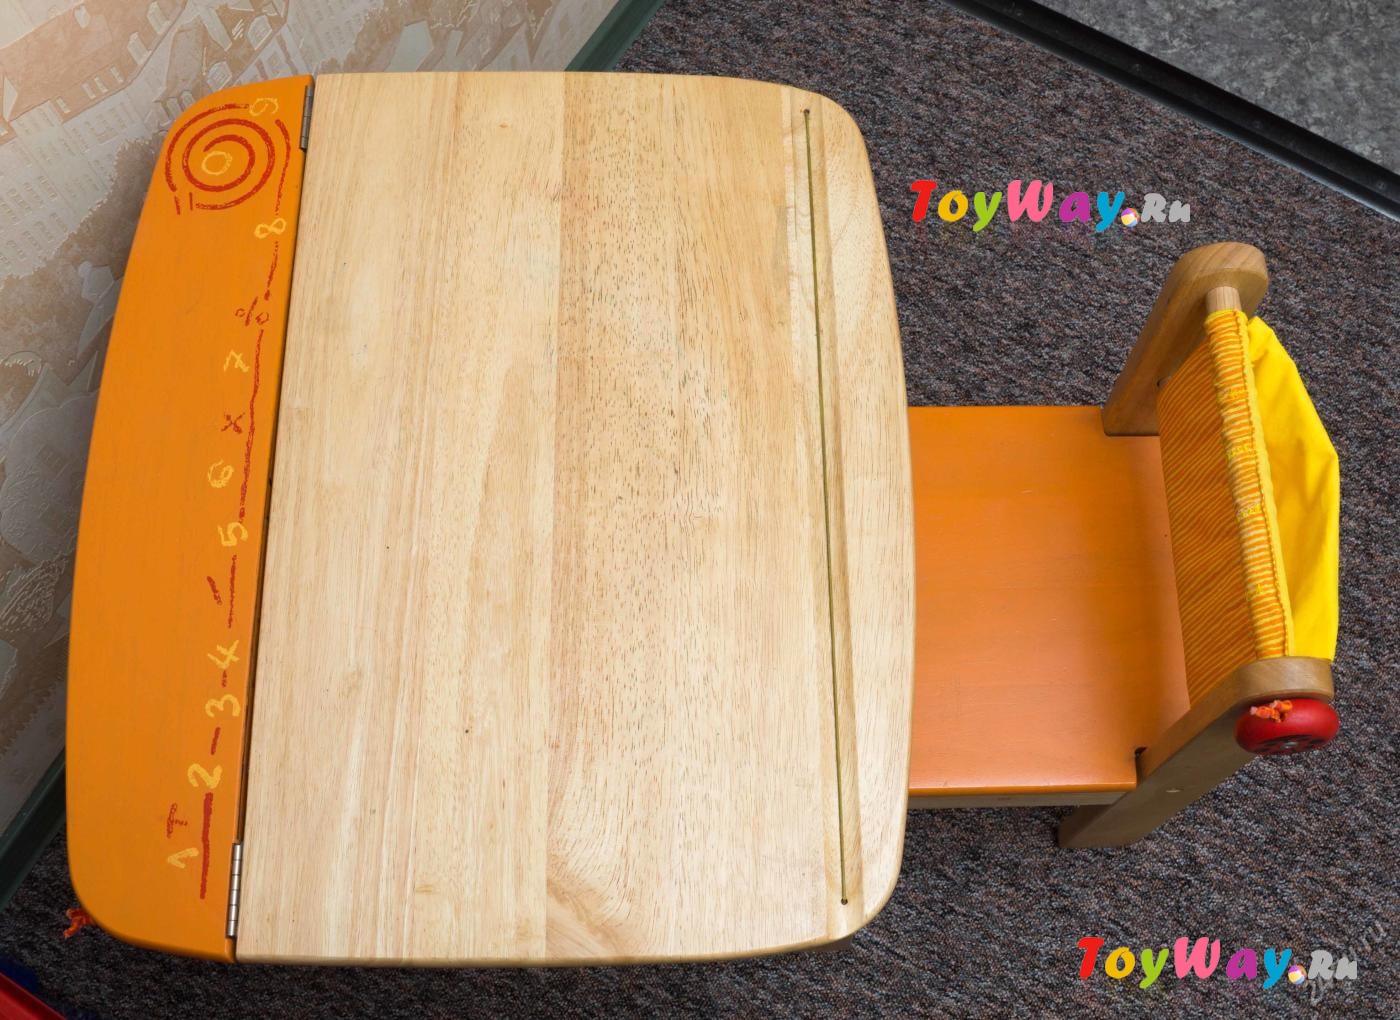 I'm Toy Стол для рисования с держателем для рулона бумаги и контейнером, оранжевый  